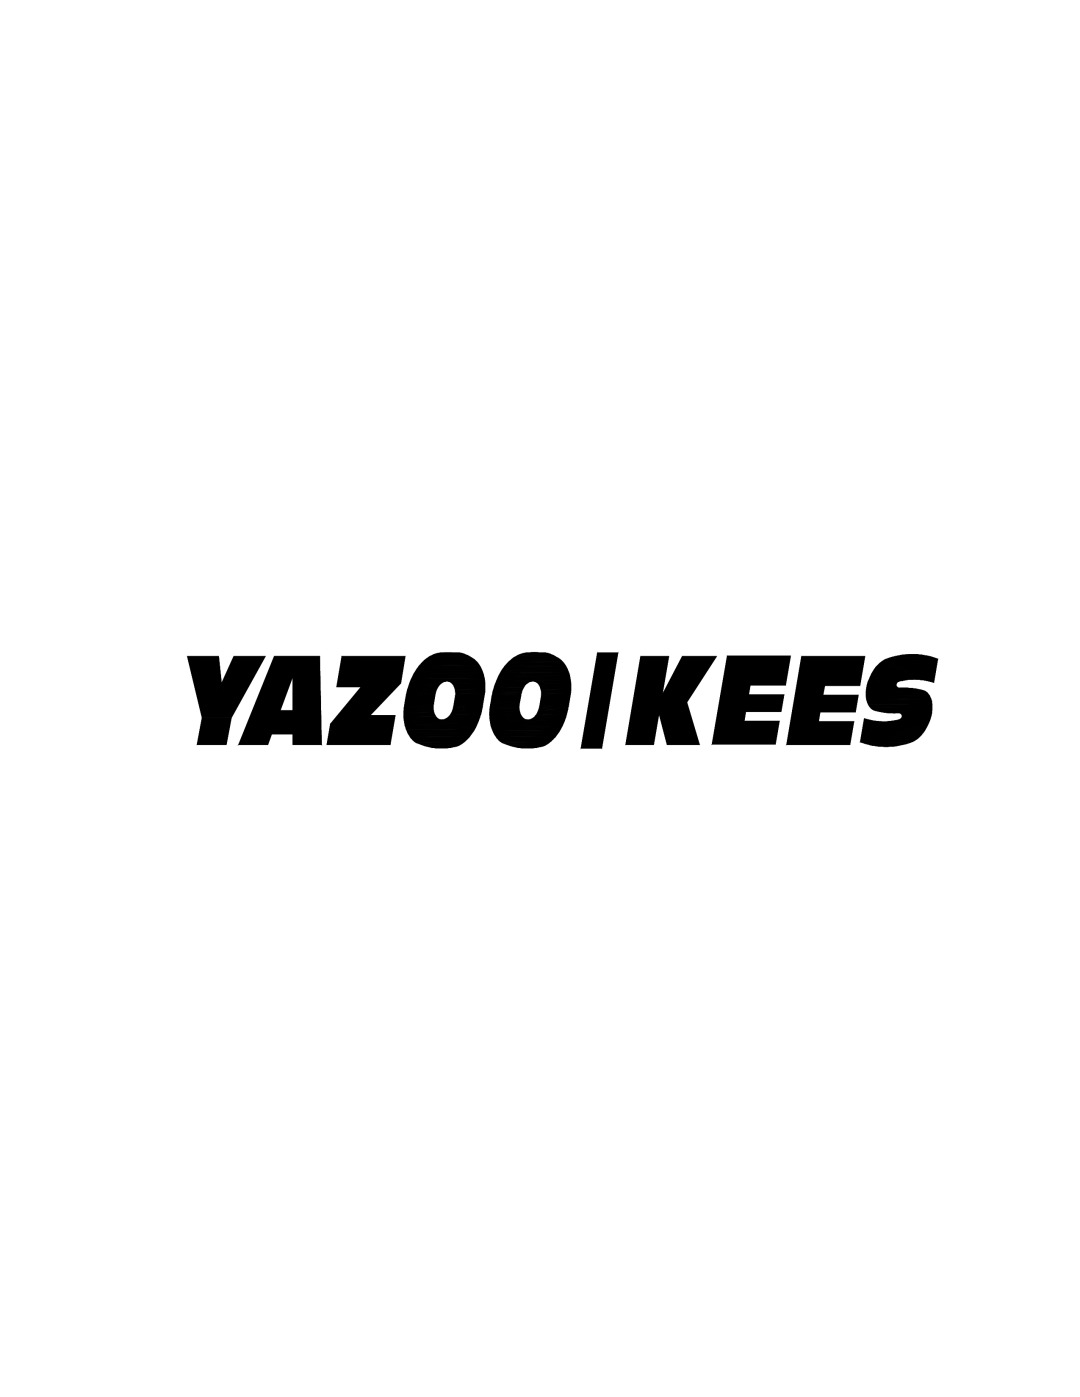 Yazoo/Kees ZKH52222, ZKH52223, ZKH52252, ZKH52253, ZKH61252, ZKH61253, ZKHP52233, ZKHP52253, ZKHP61253, ZKW52233, ZKW61233 